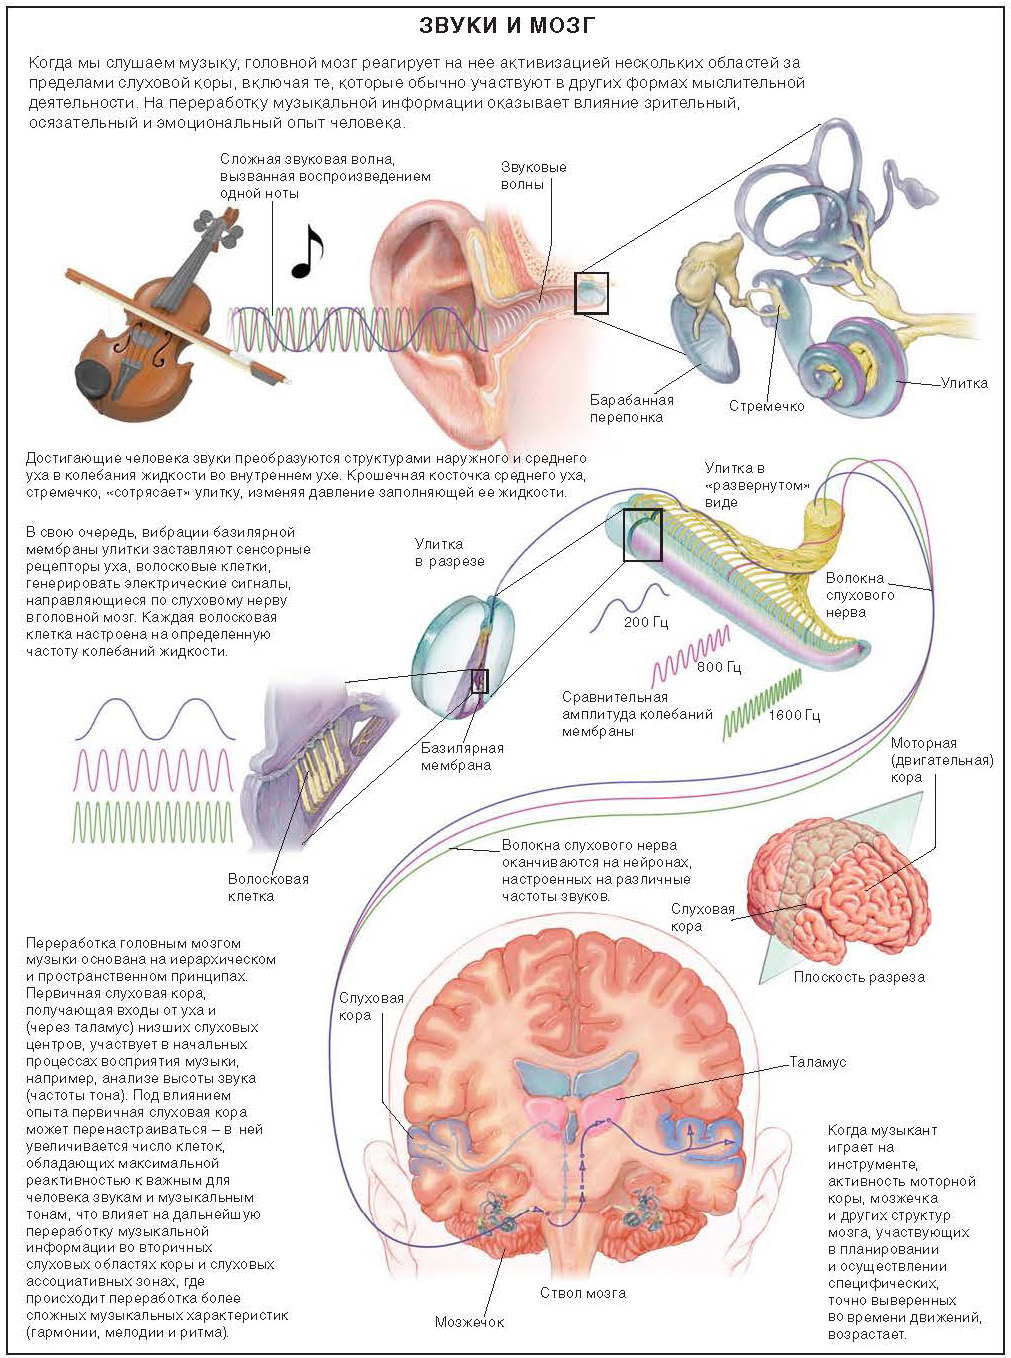 Мозг слышит звуки. Влияние музыки на мозг человека. Влияние звука на мозг человека. Схема воздействия музыки на человека. Влияние музыки на человека схема.